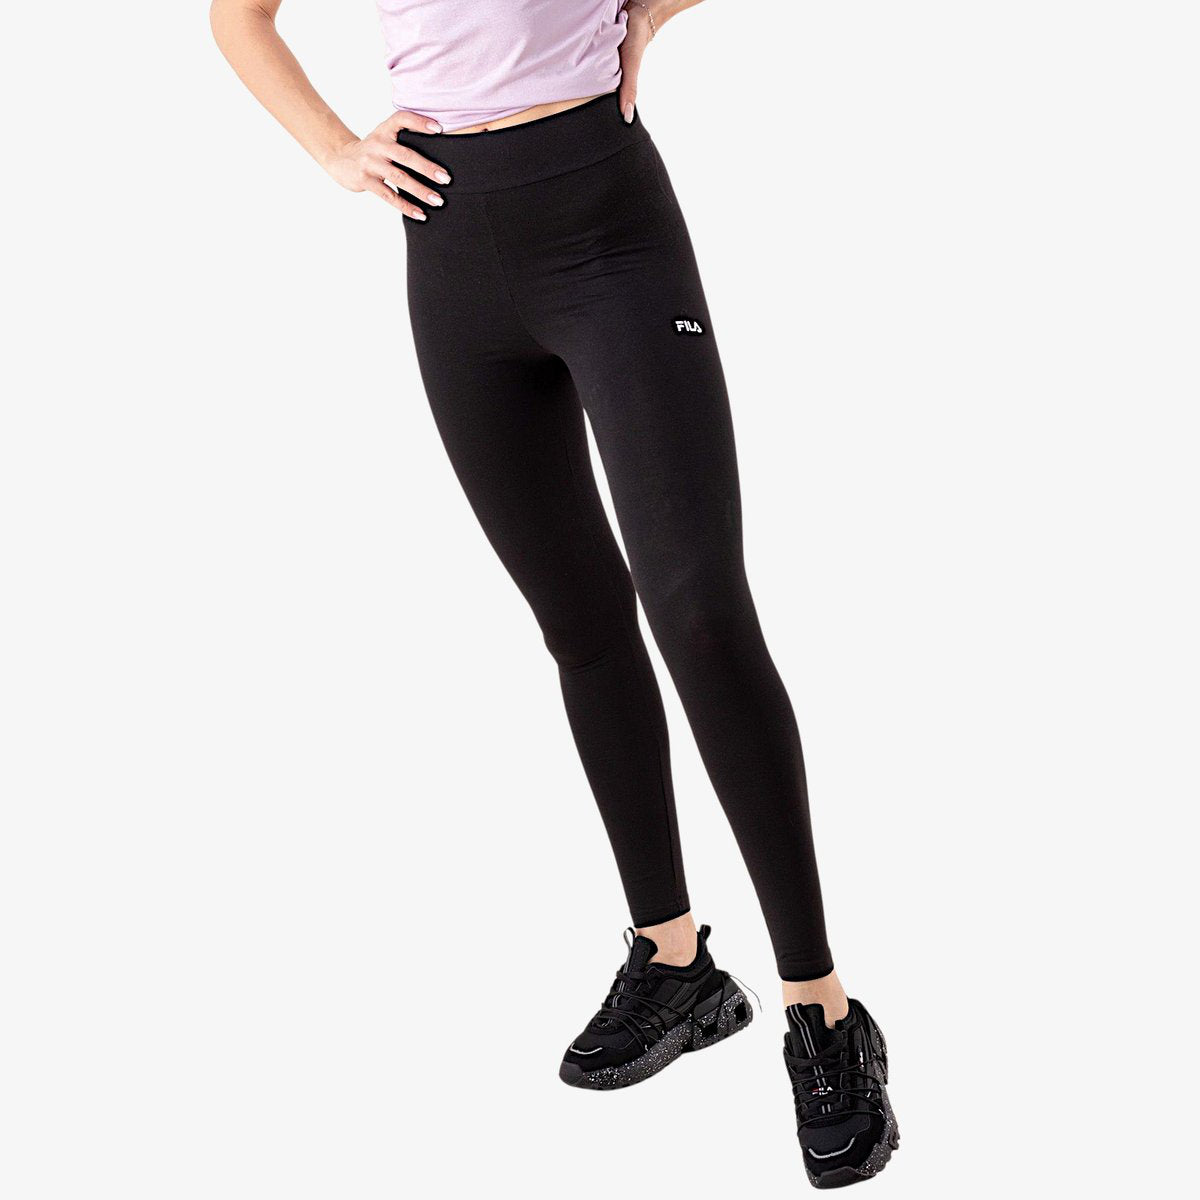 Women's high-waisted leggings Fila Benndorf - Fila - Brands